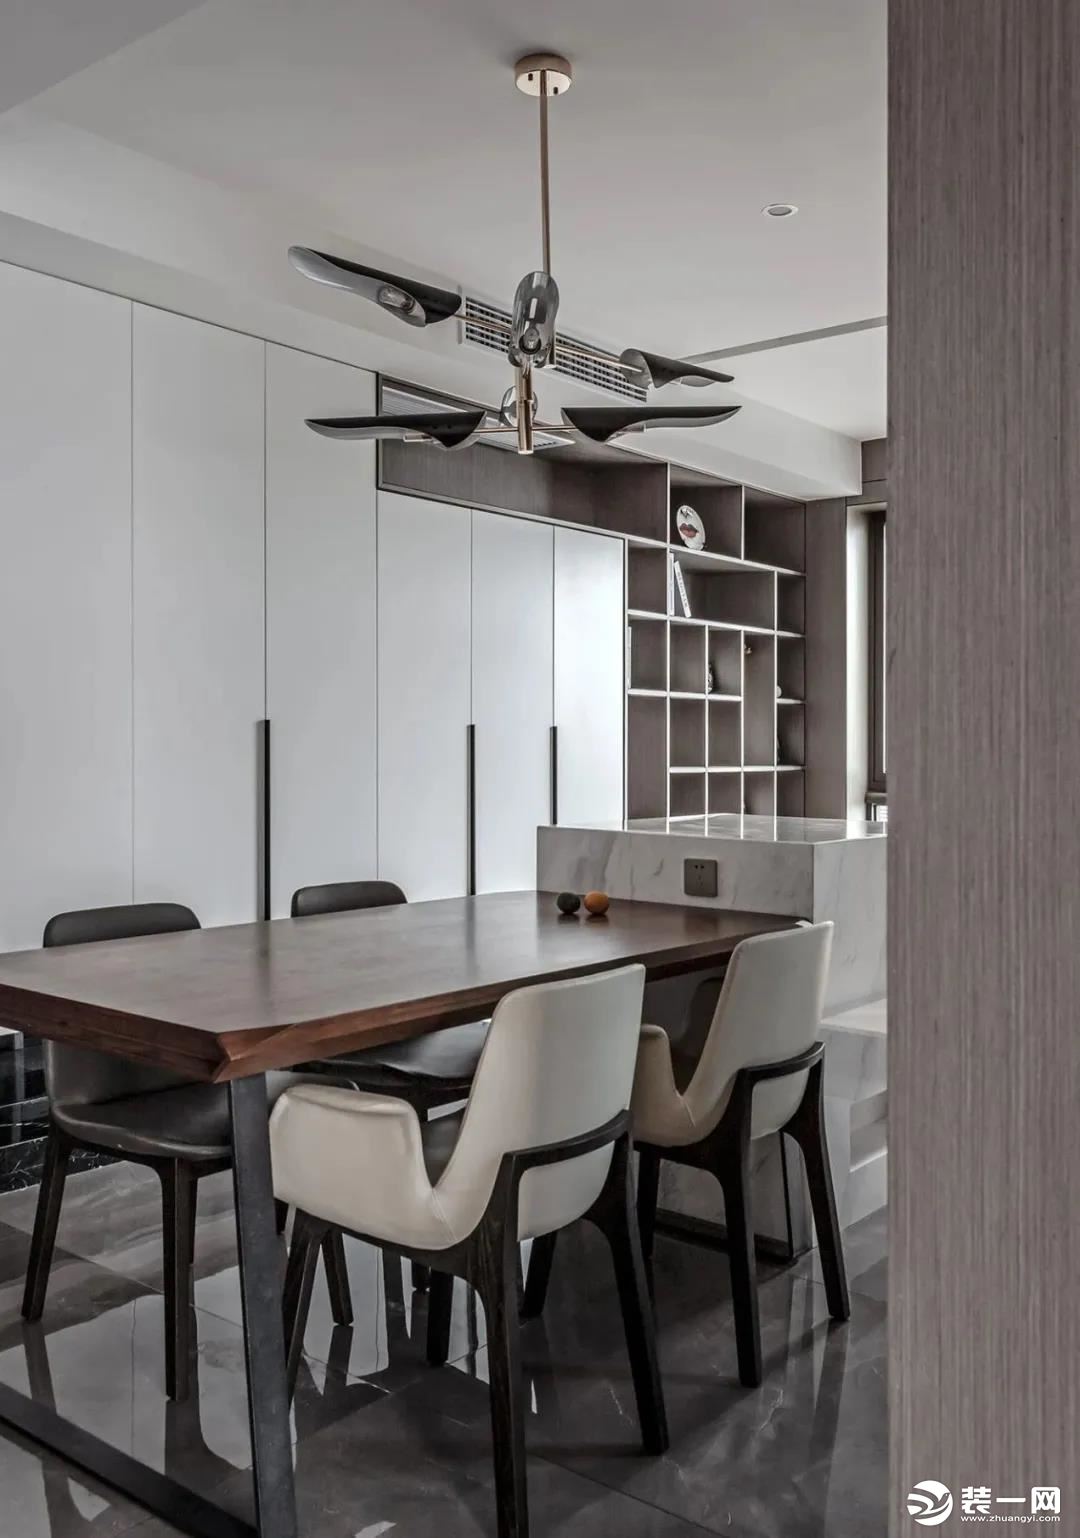 布置木色餐桌与大理石岛台相连，有效的填充了原本狭长的餐厅空间